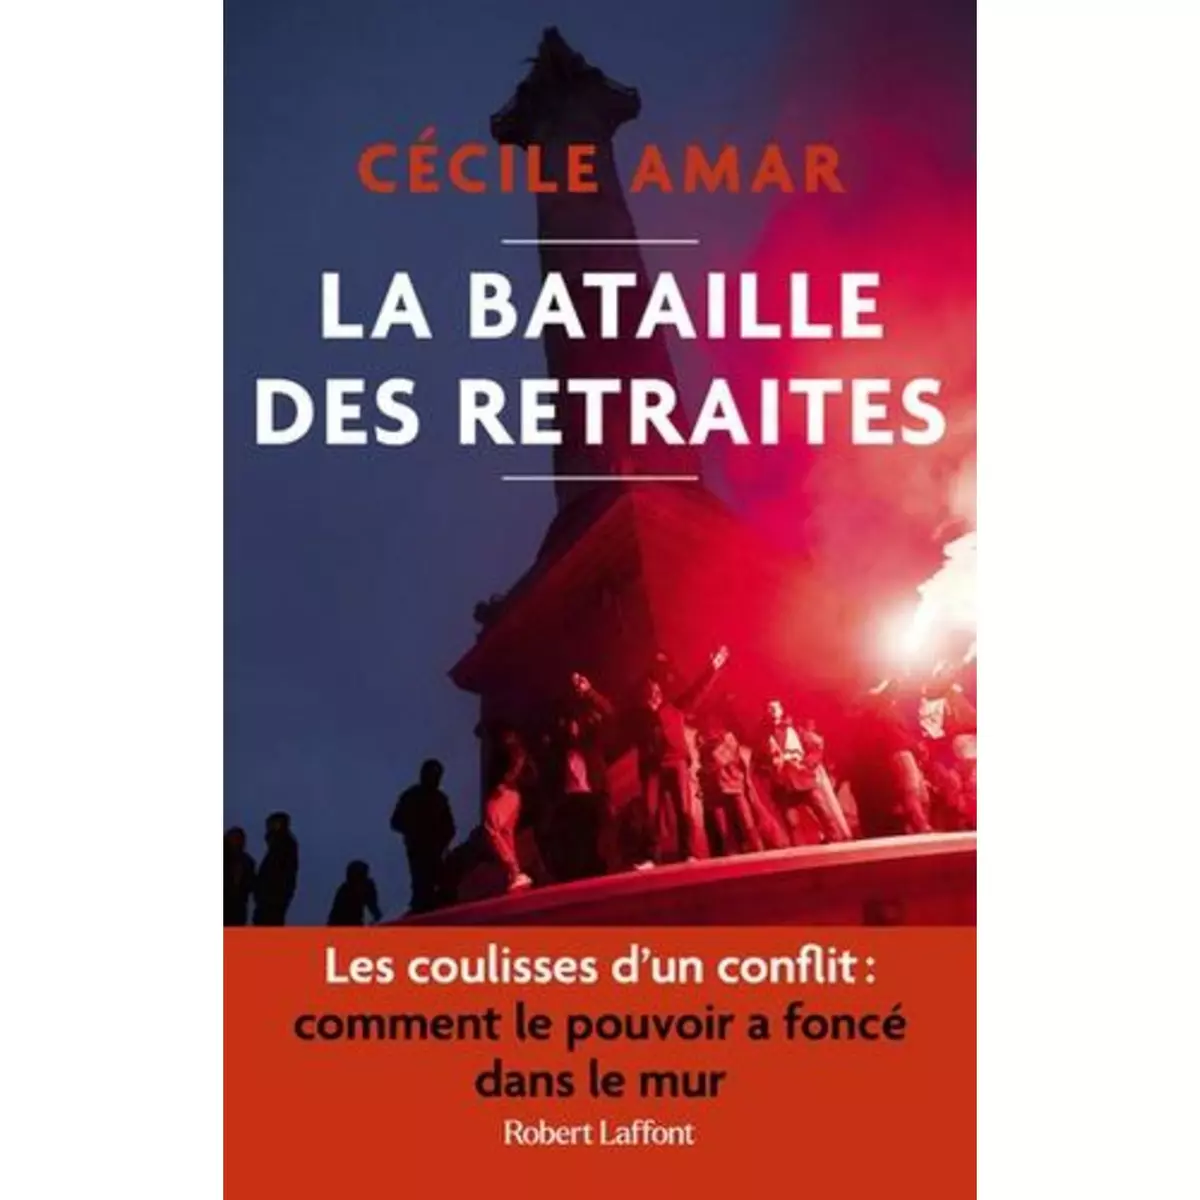  LA BATAILLE DES RETRAITES, Amar Cécile